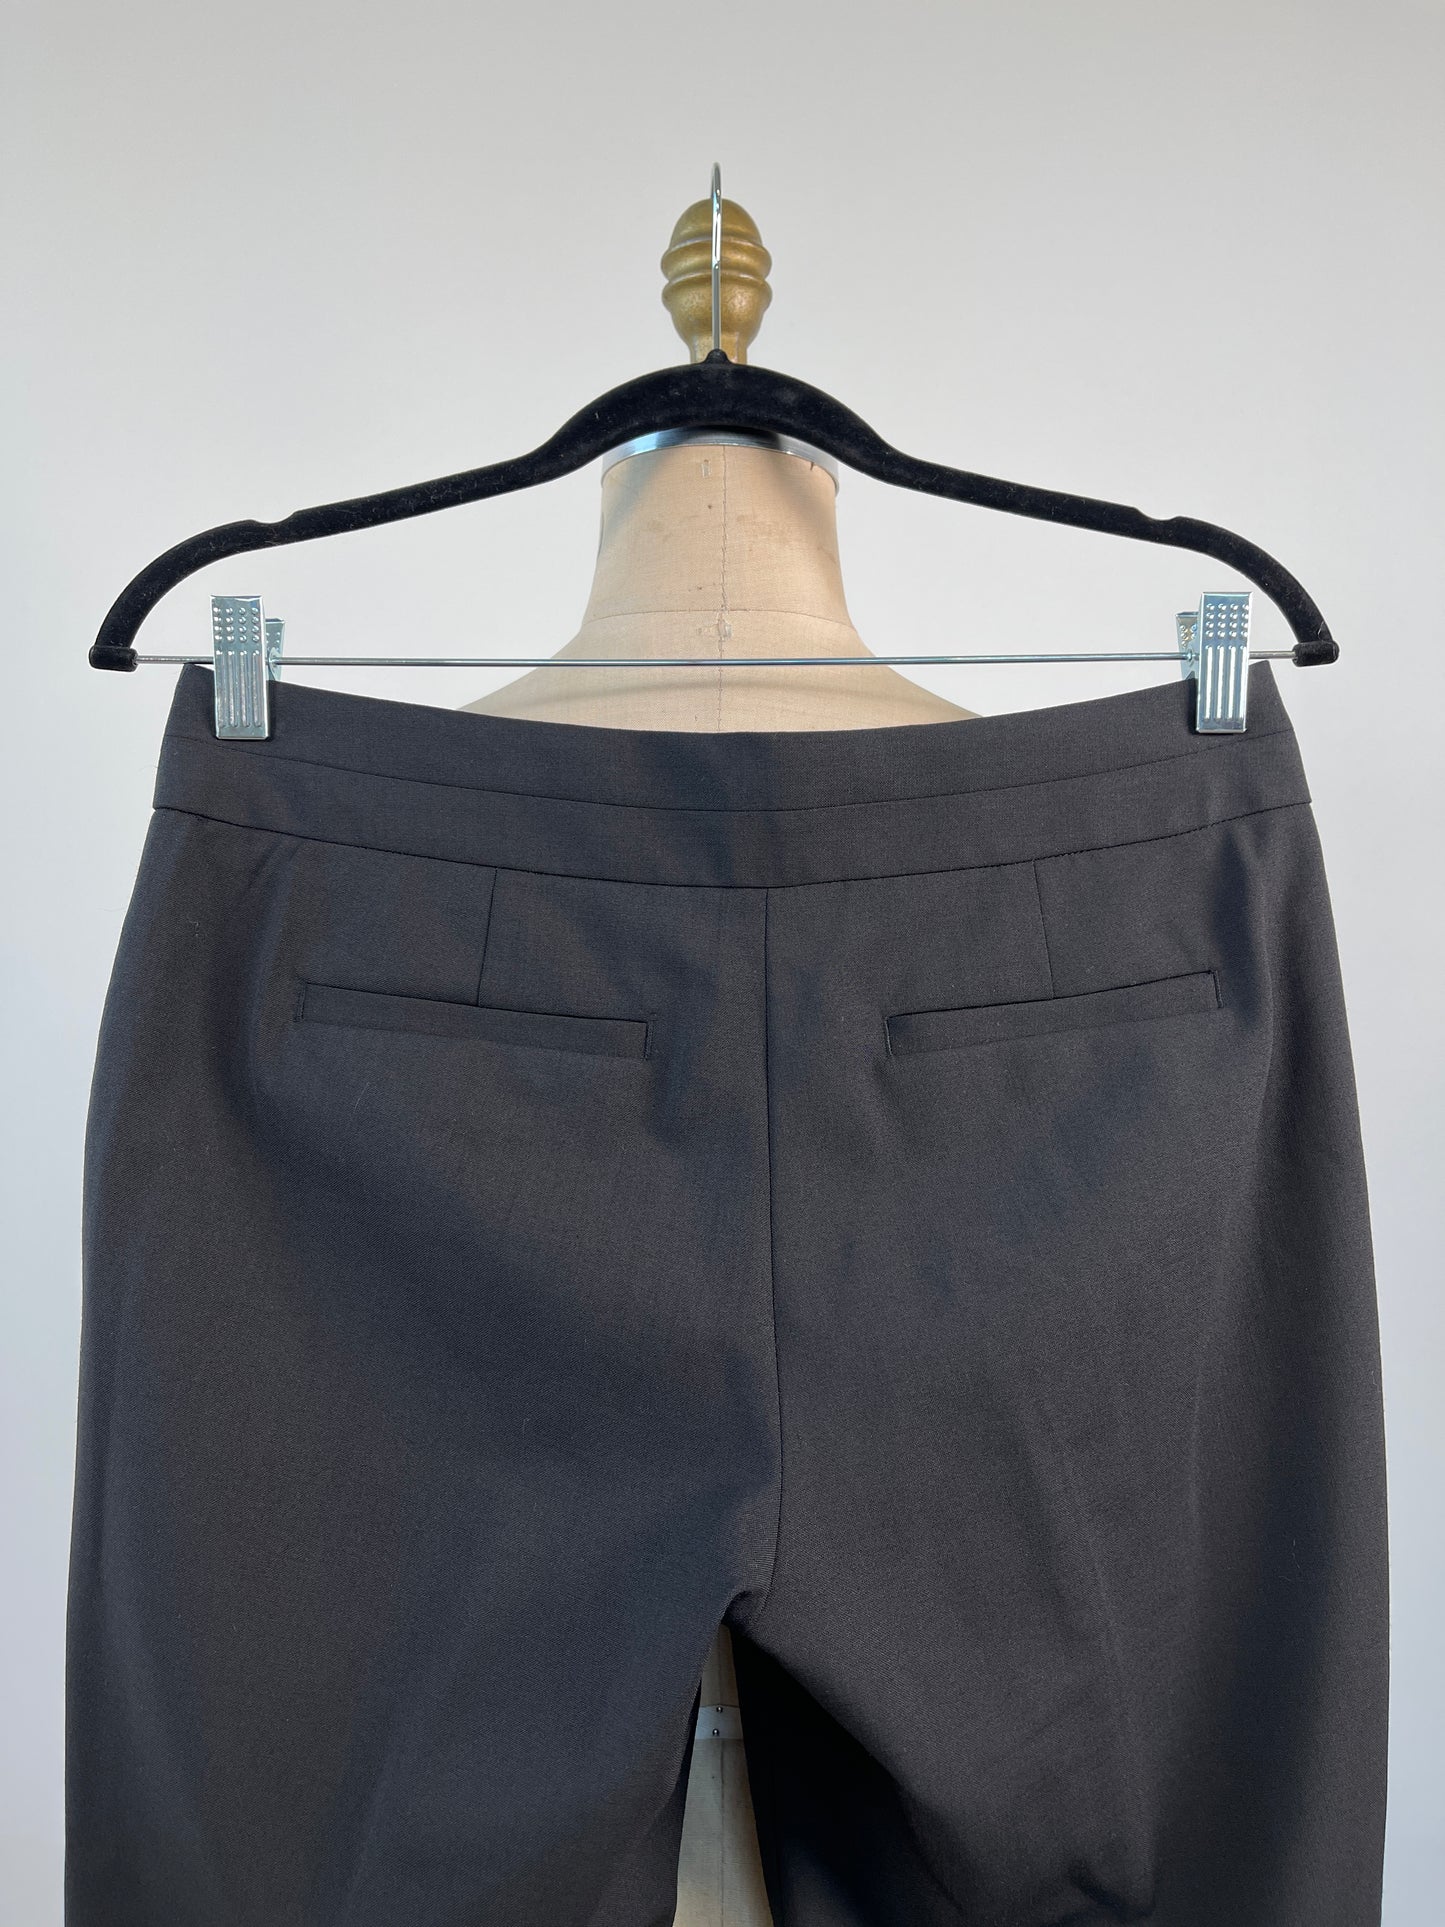 Pantalon noir coupe droite lavable (XS)